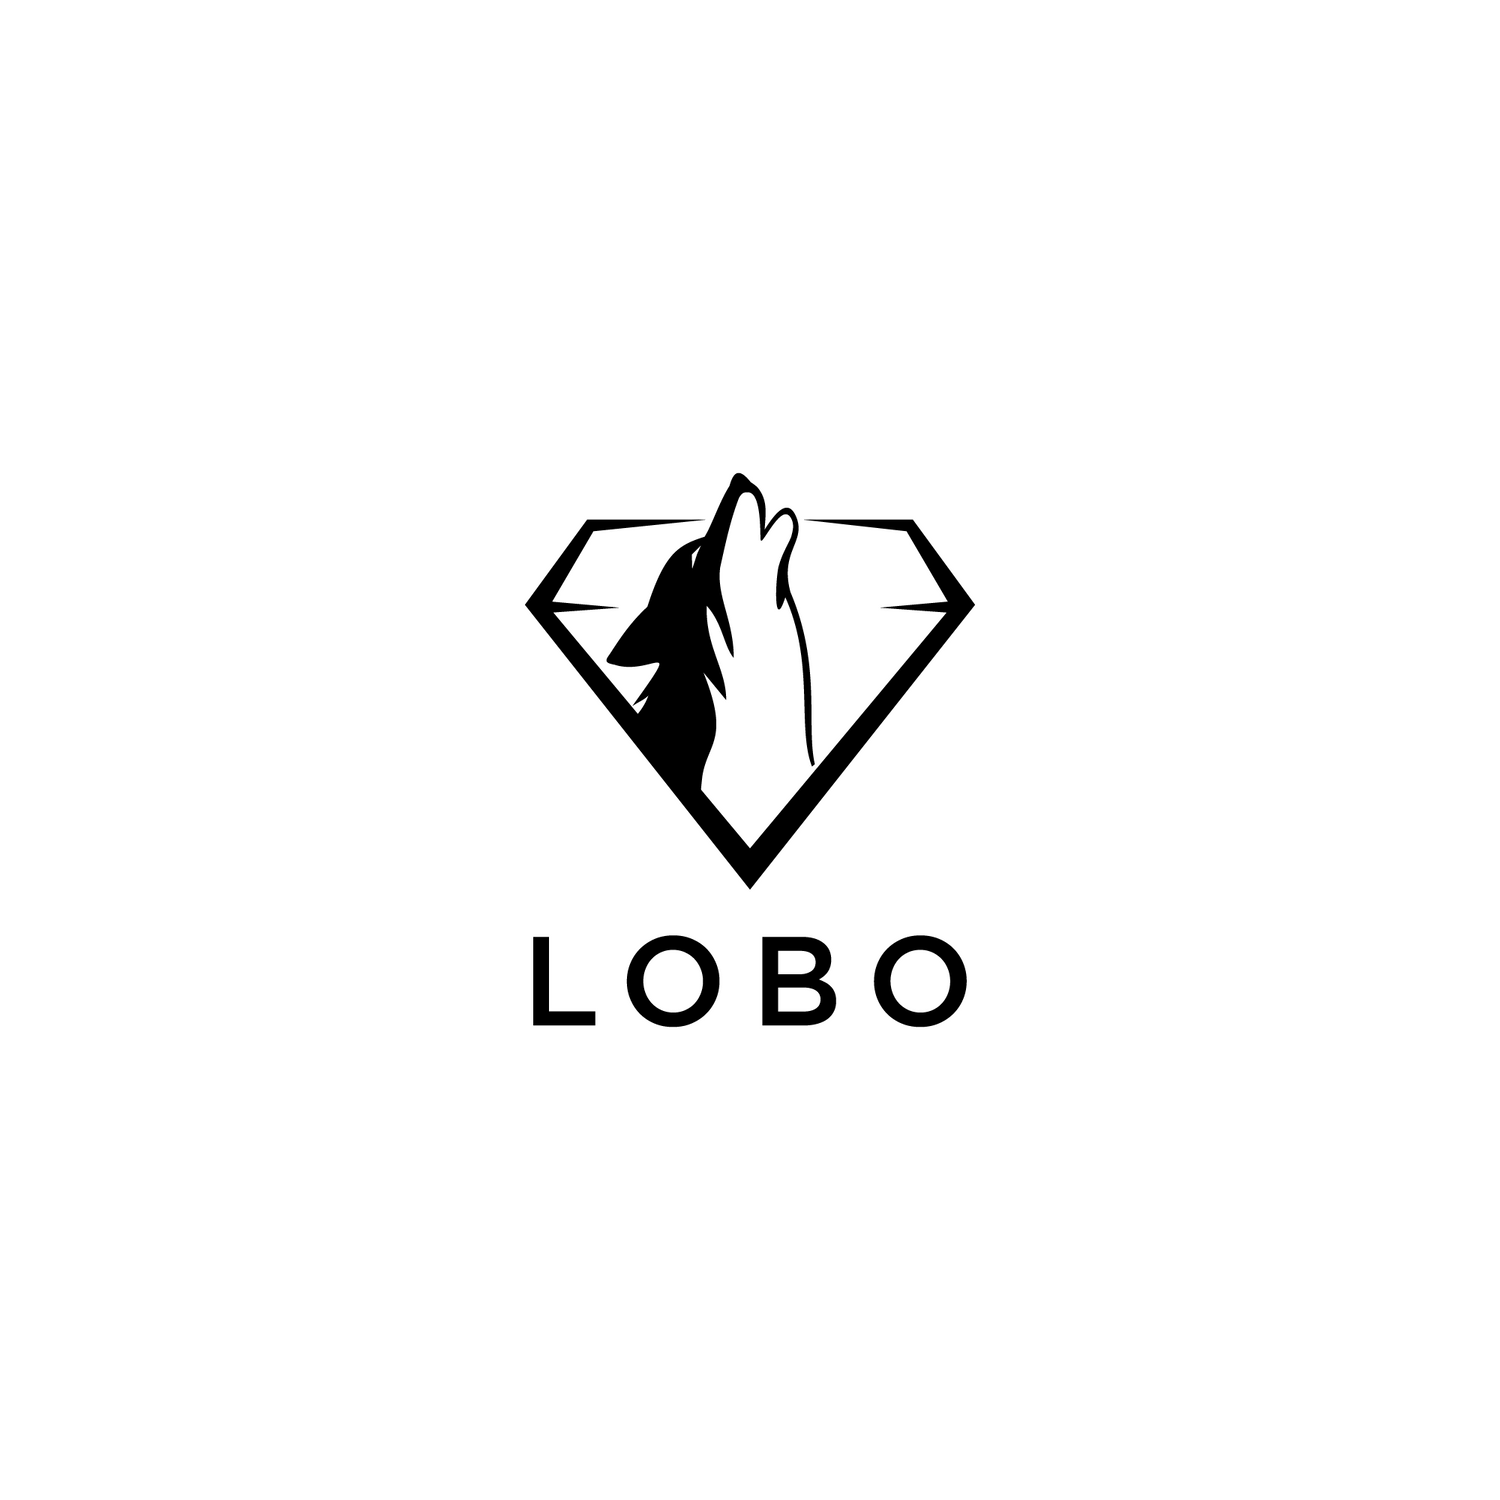 Colossal Diamond Tools - Distributor of Lobo Adhesives